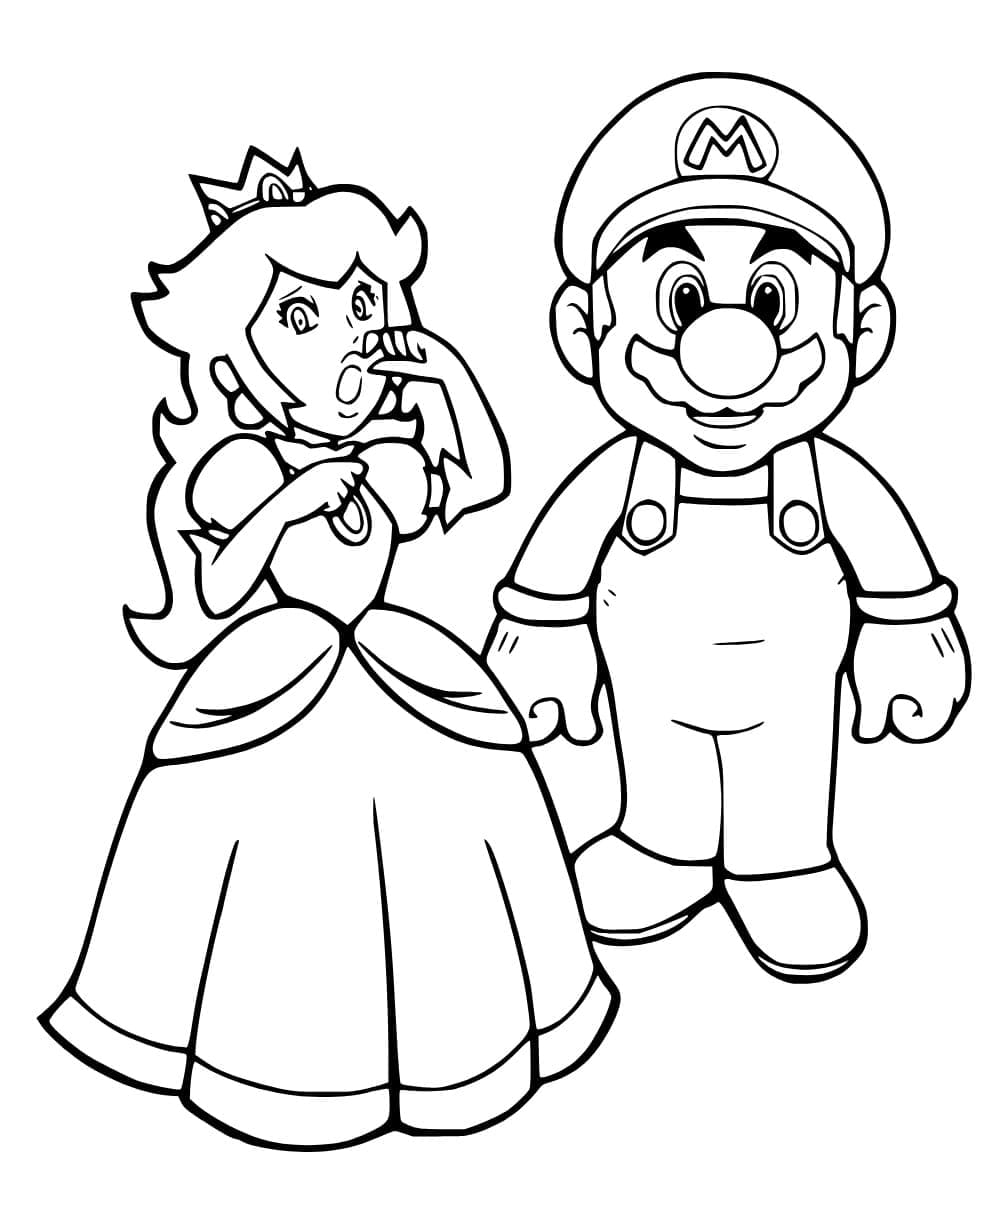 Coloriage Princesse Peach et Mario